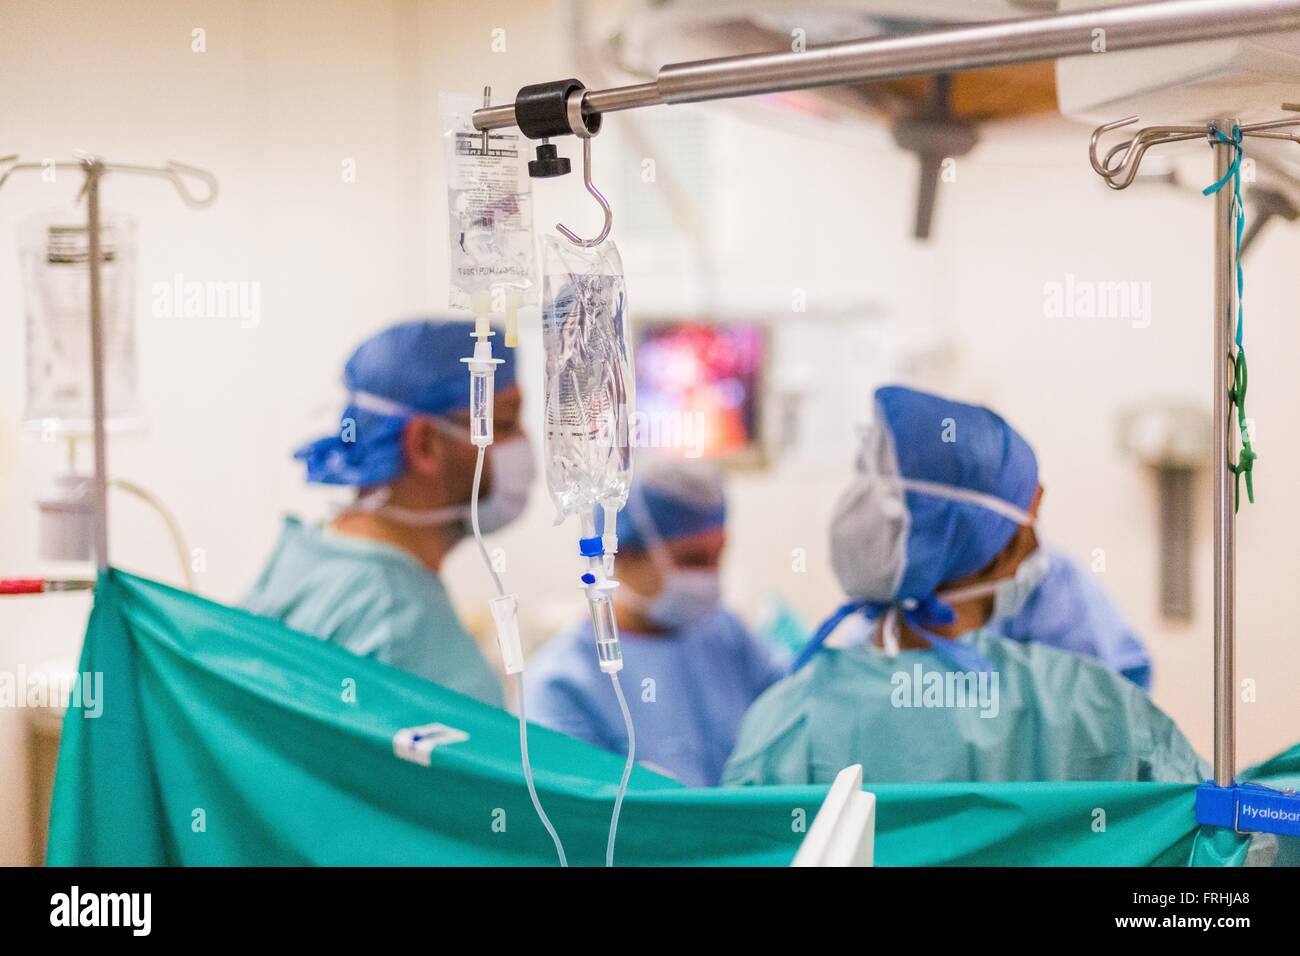 L'hystéroscopie et la laparoscopie chirurgicale ici d'exploration, le traitement de l'endométriose, l'hôpital de Limoges, France. Banque D'Images